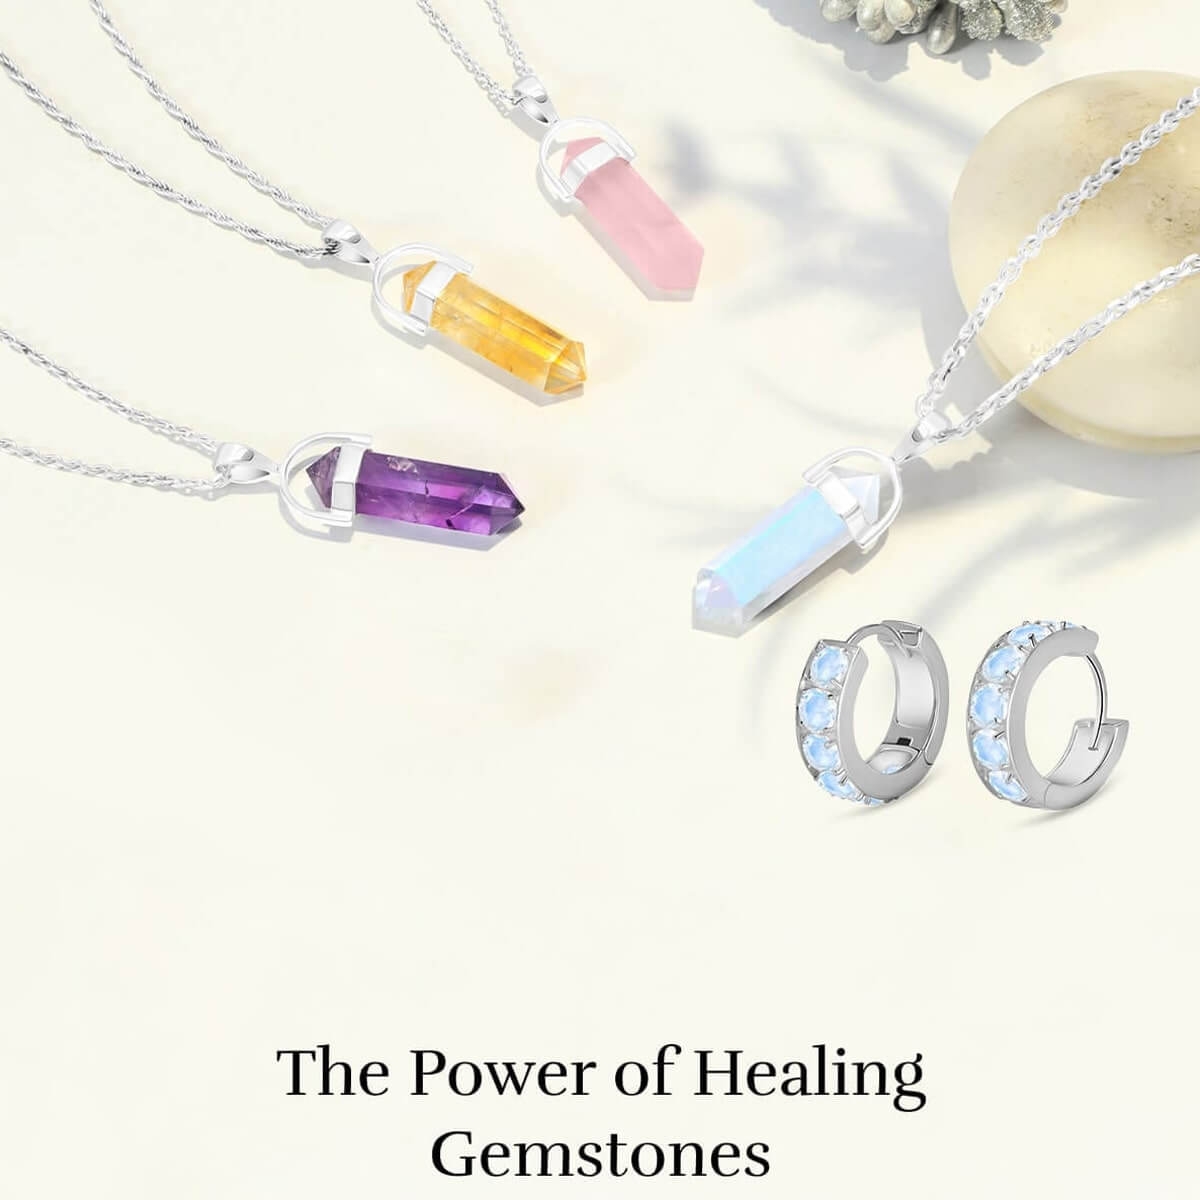 Gemstones Healing properties